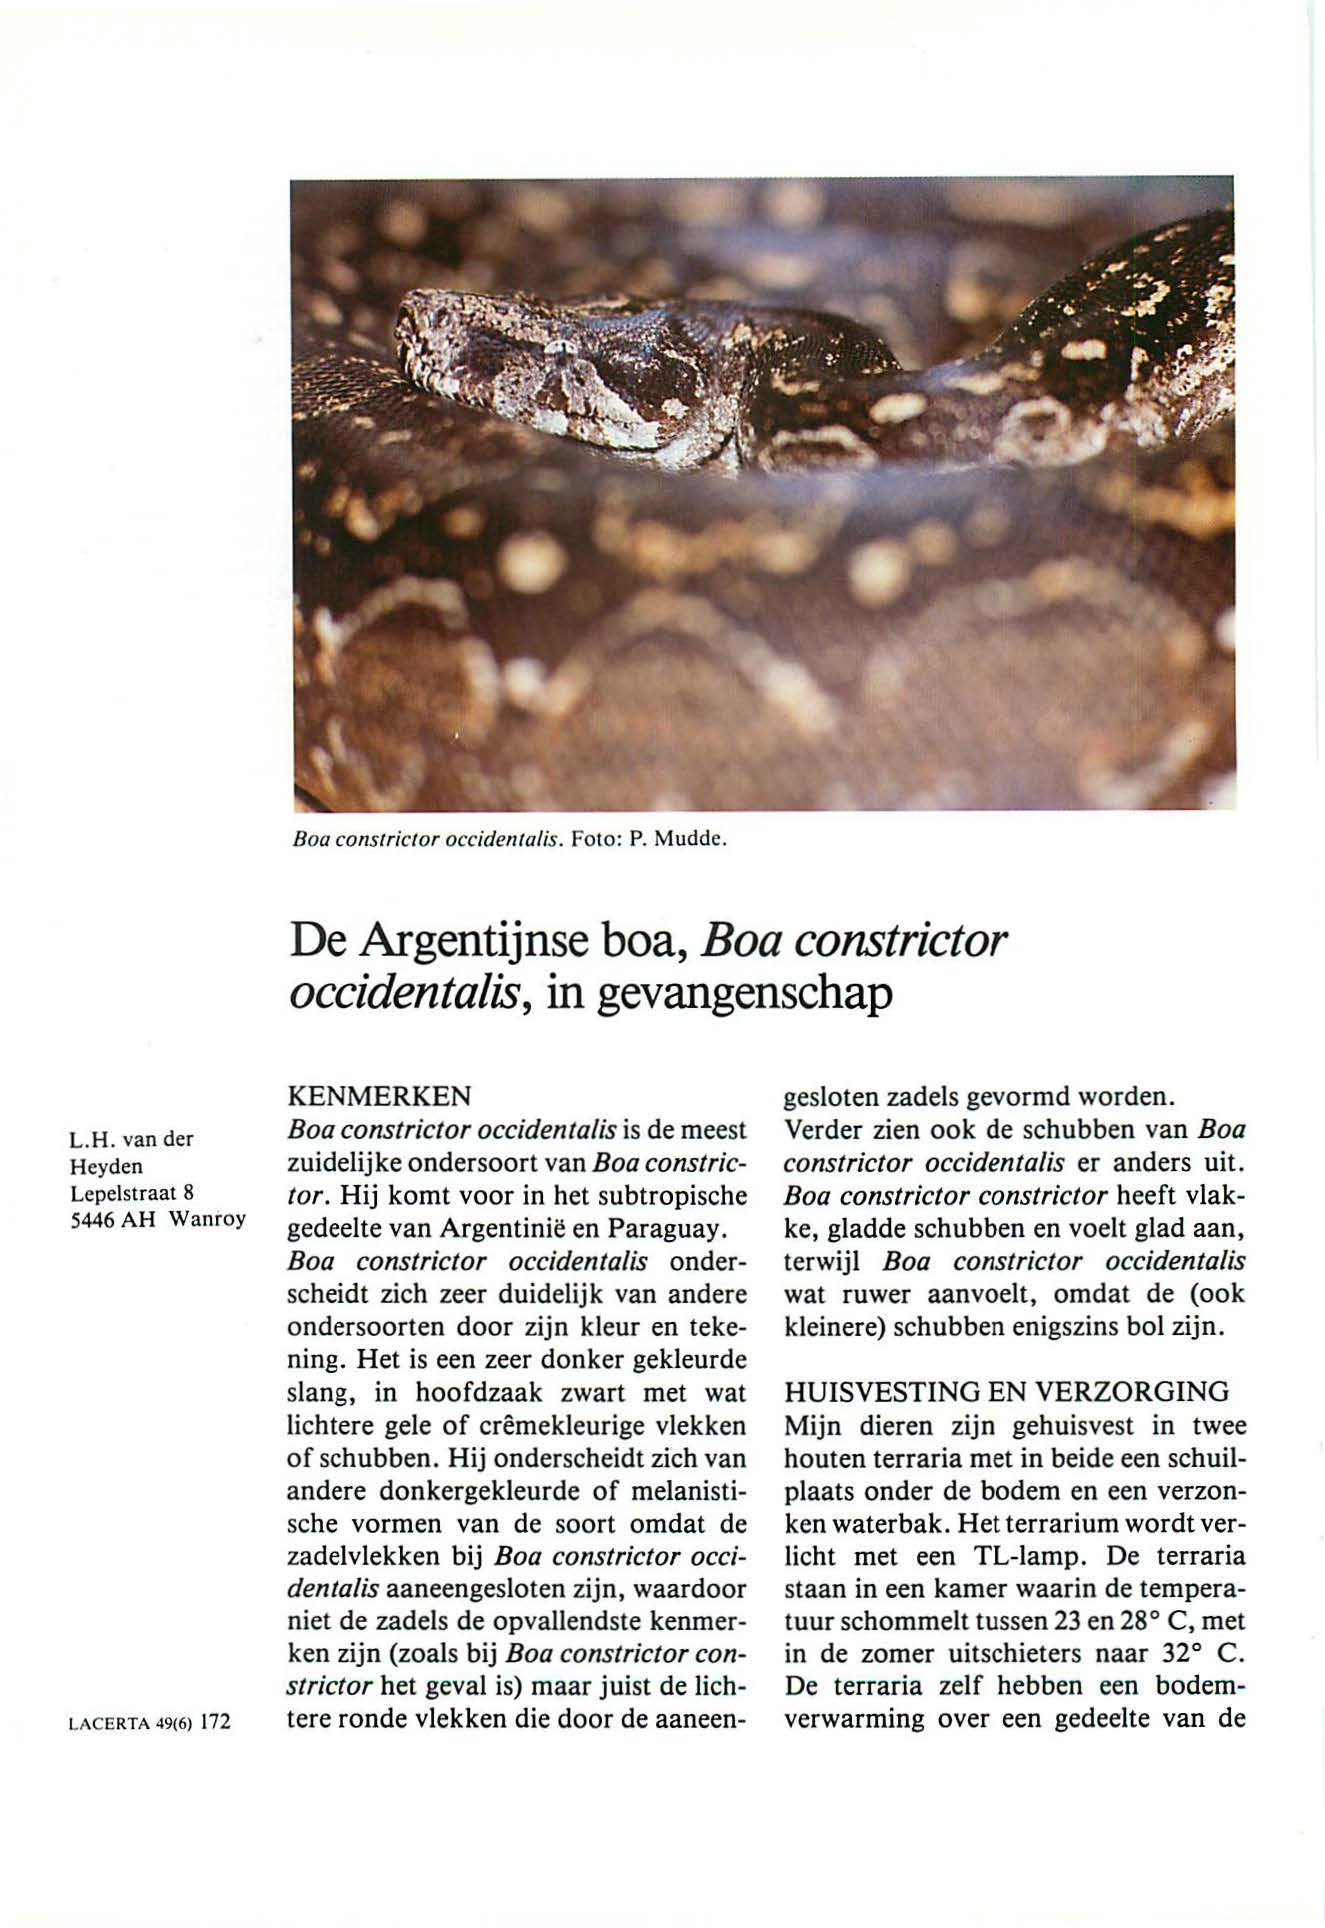 Boa corzsrricror occiderzlalis. Foto: P. Mudde. De Argentijnse boa, Boa constrictor occident a/is, in gevangenschap L.H.